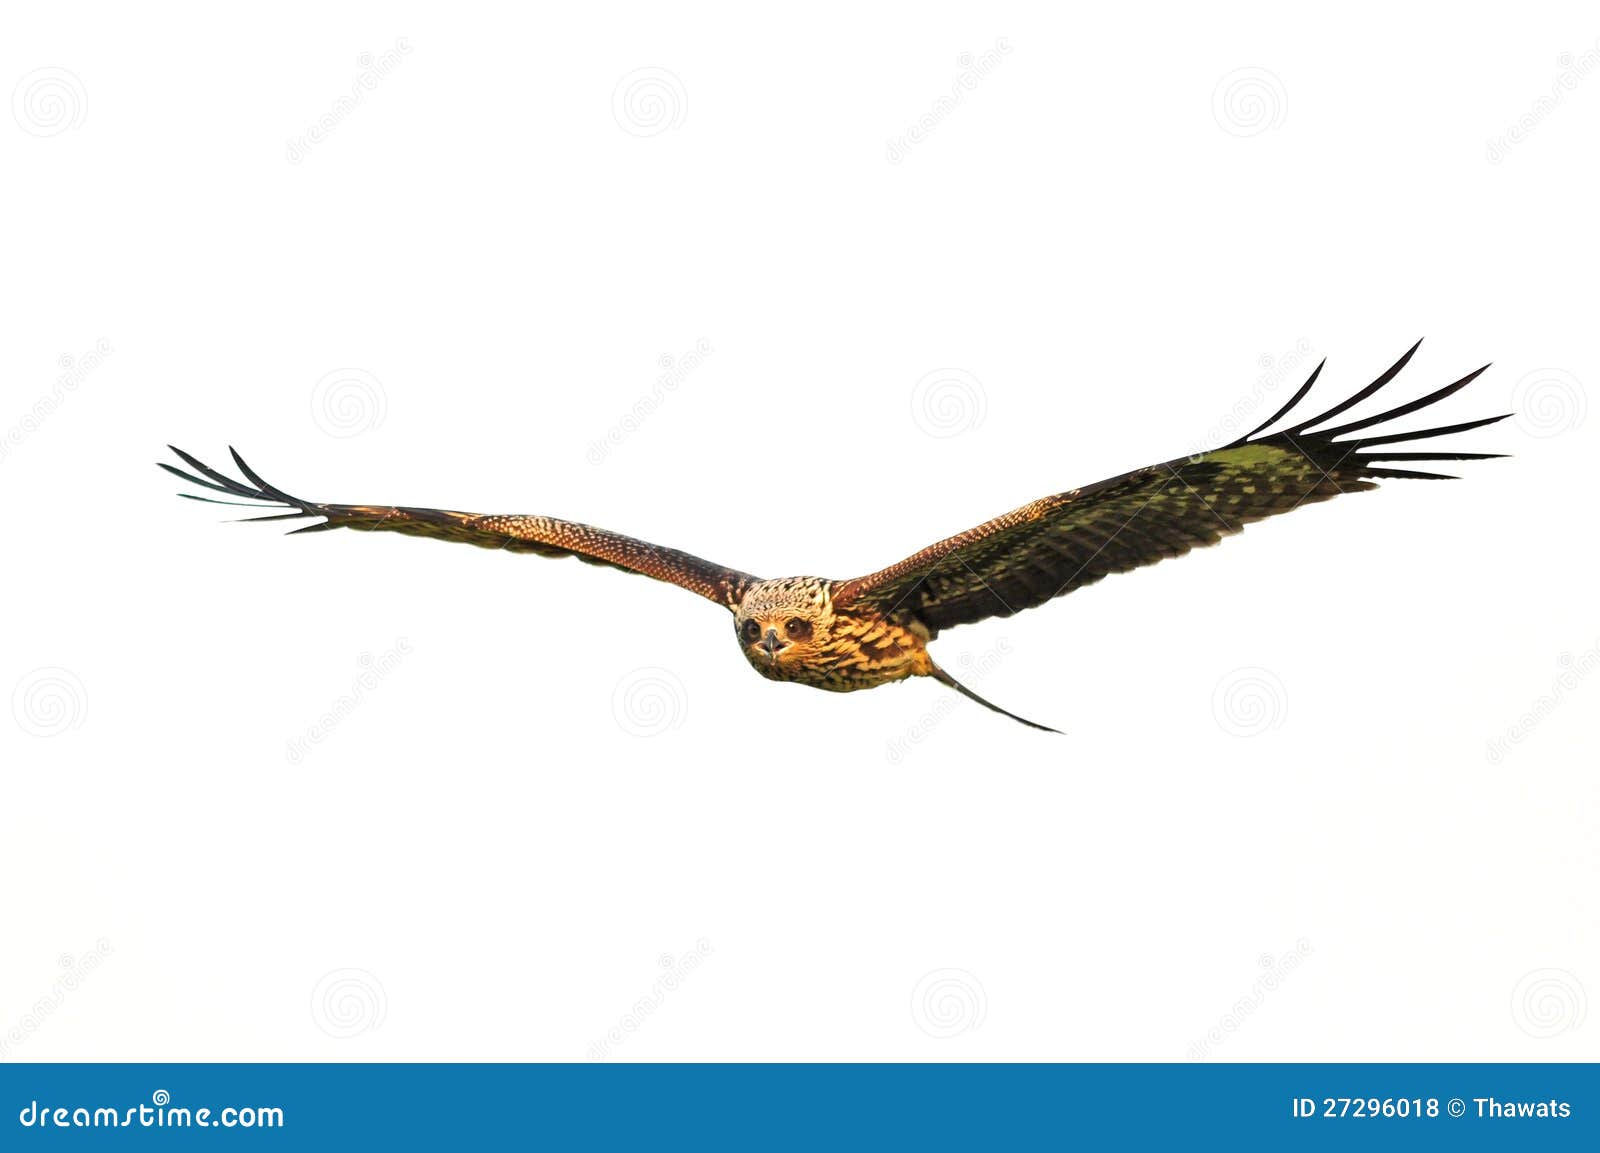 Black Kite Bird in flight on white background